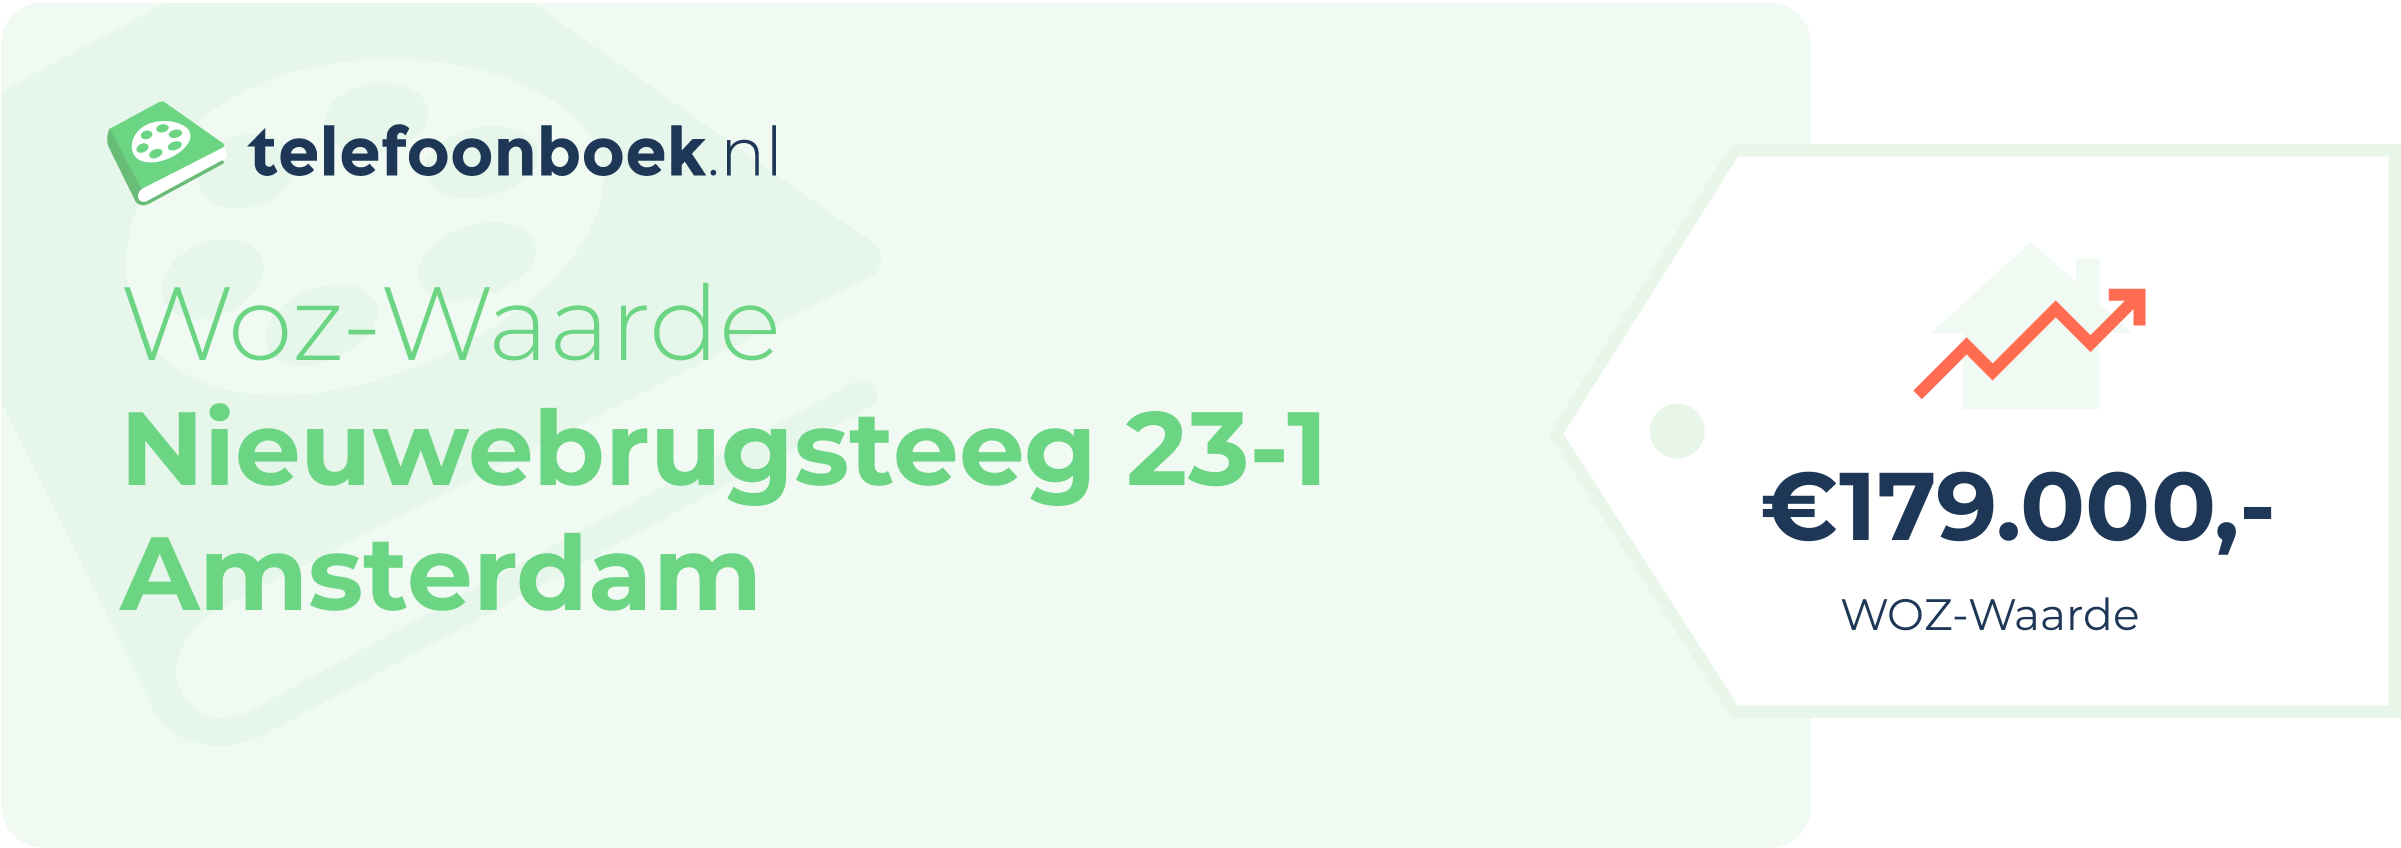 WOZ-waarde Nieuwebrugsteeg 23-1 Amsterdam